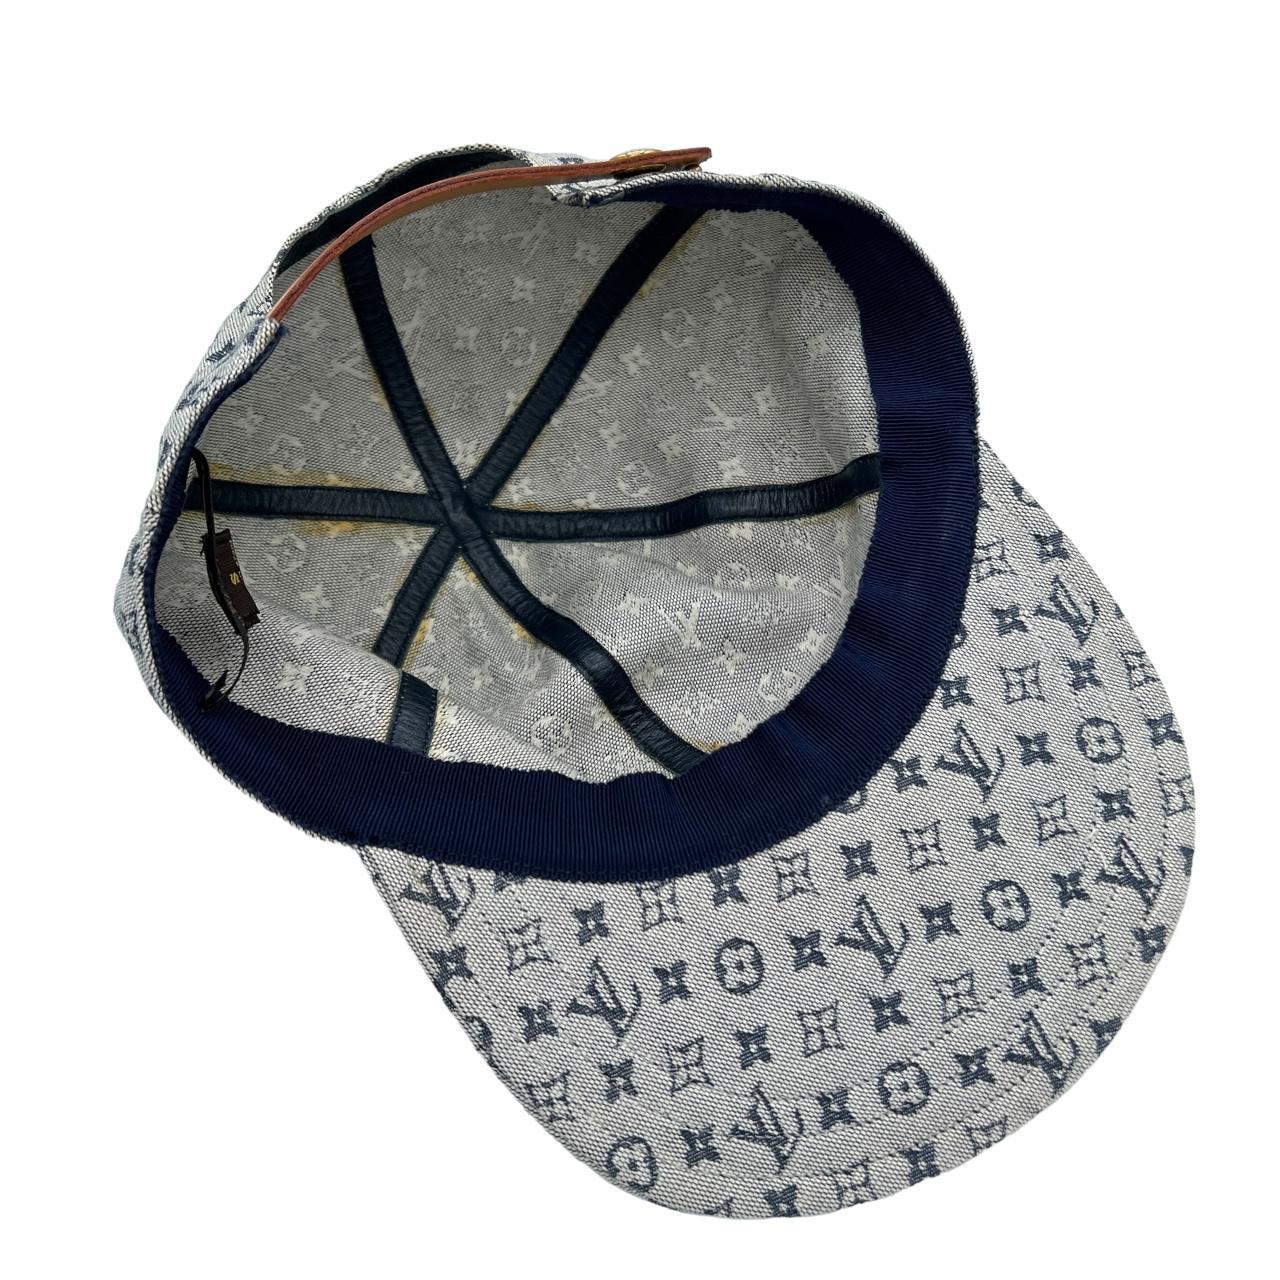 Louis Vuitton hat - Depop